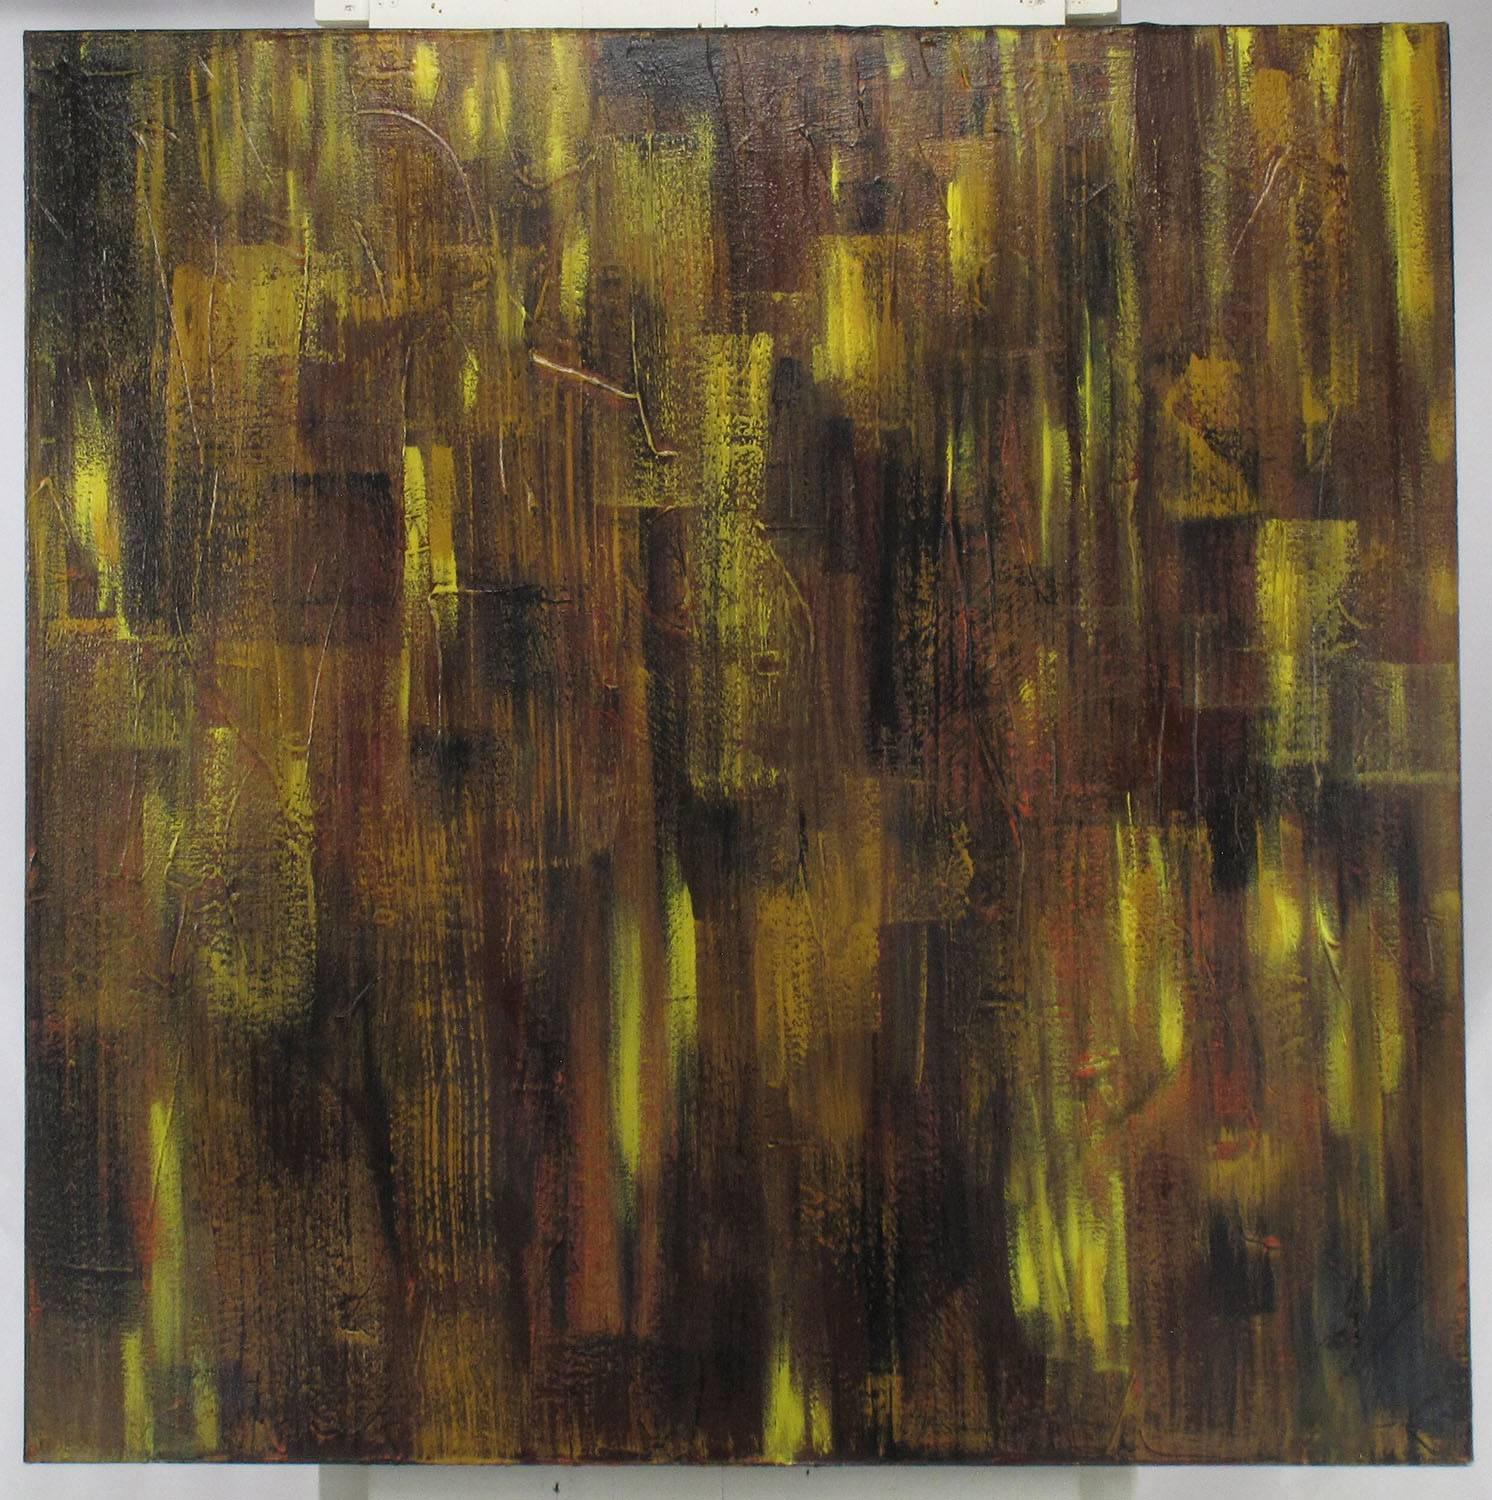 Grande peinture expressionniste abstraite à l'huile sur toile avec de larges touches de terre de sienne, de jaune, de rouge, de noir et de terre d'ombre de l'artiste Bryan Boomershine, originaire de Chicago et de Palm Springs. Toile tendue sur un